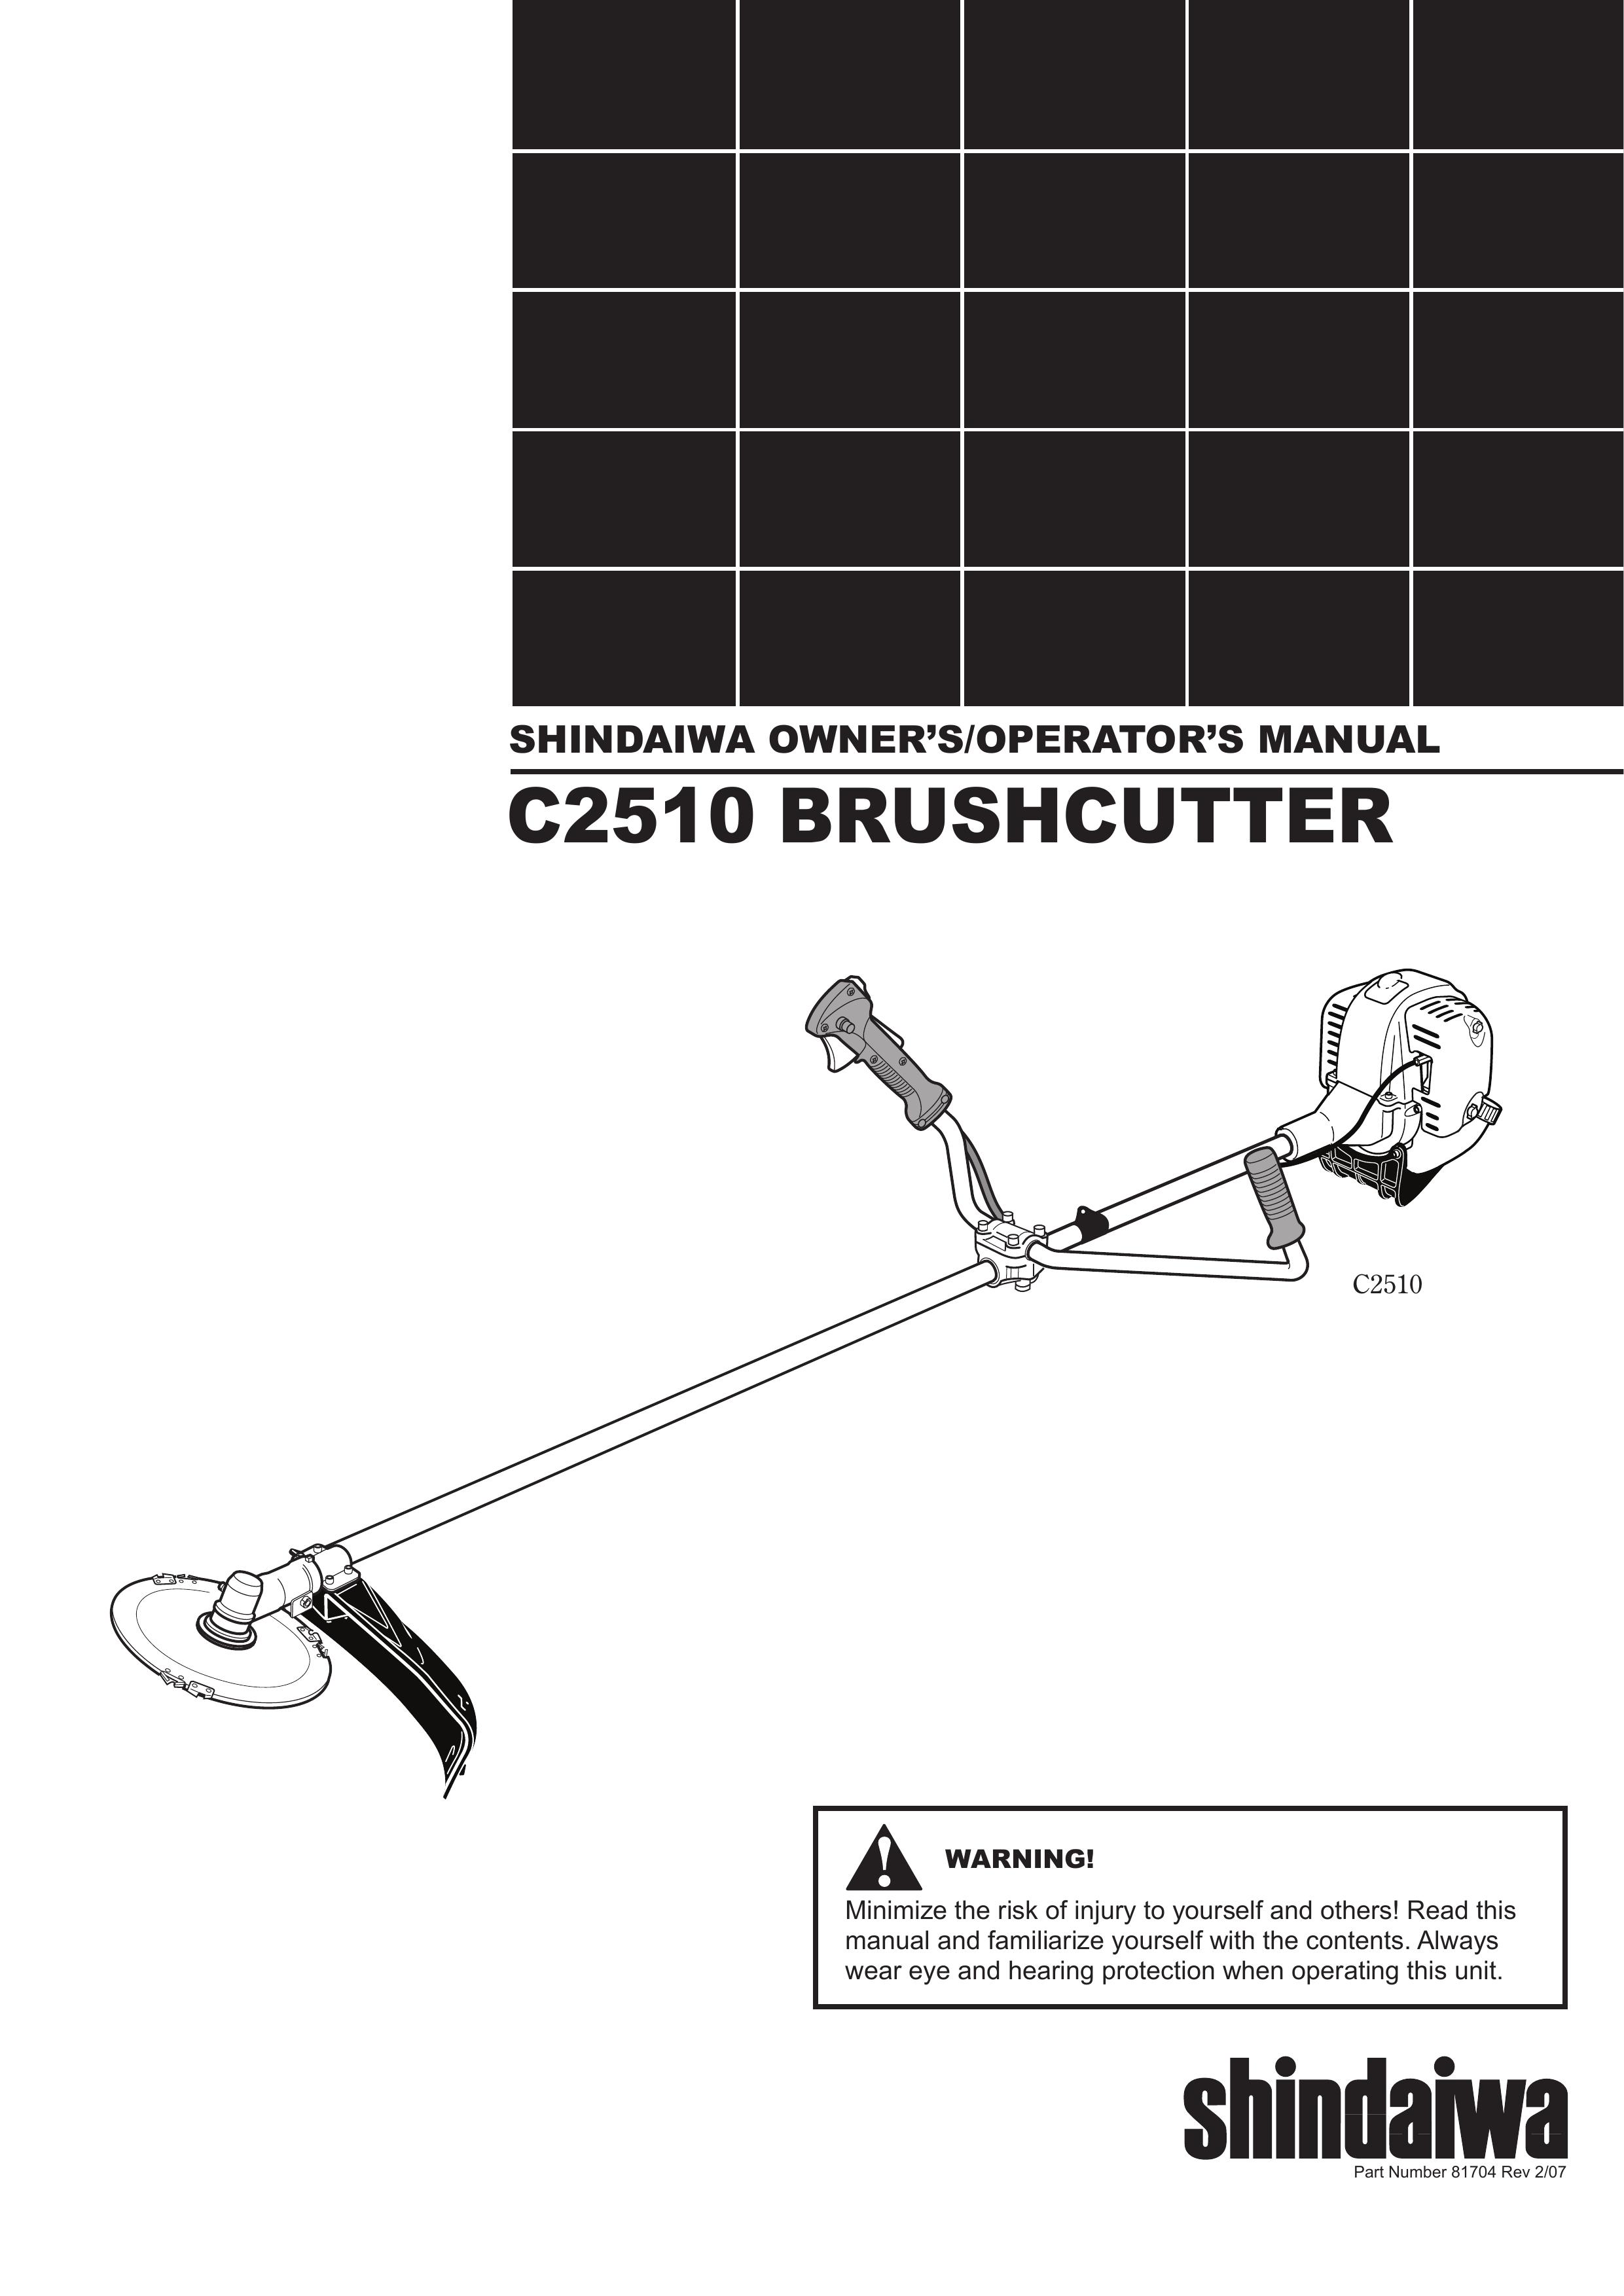 Shindaiwa 81704 Brush Cutter User Manual